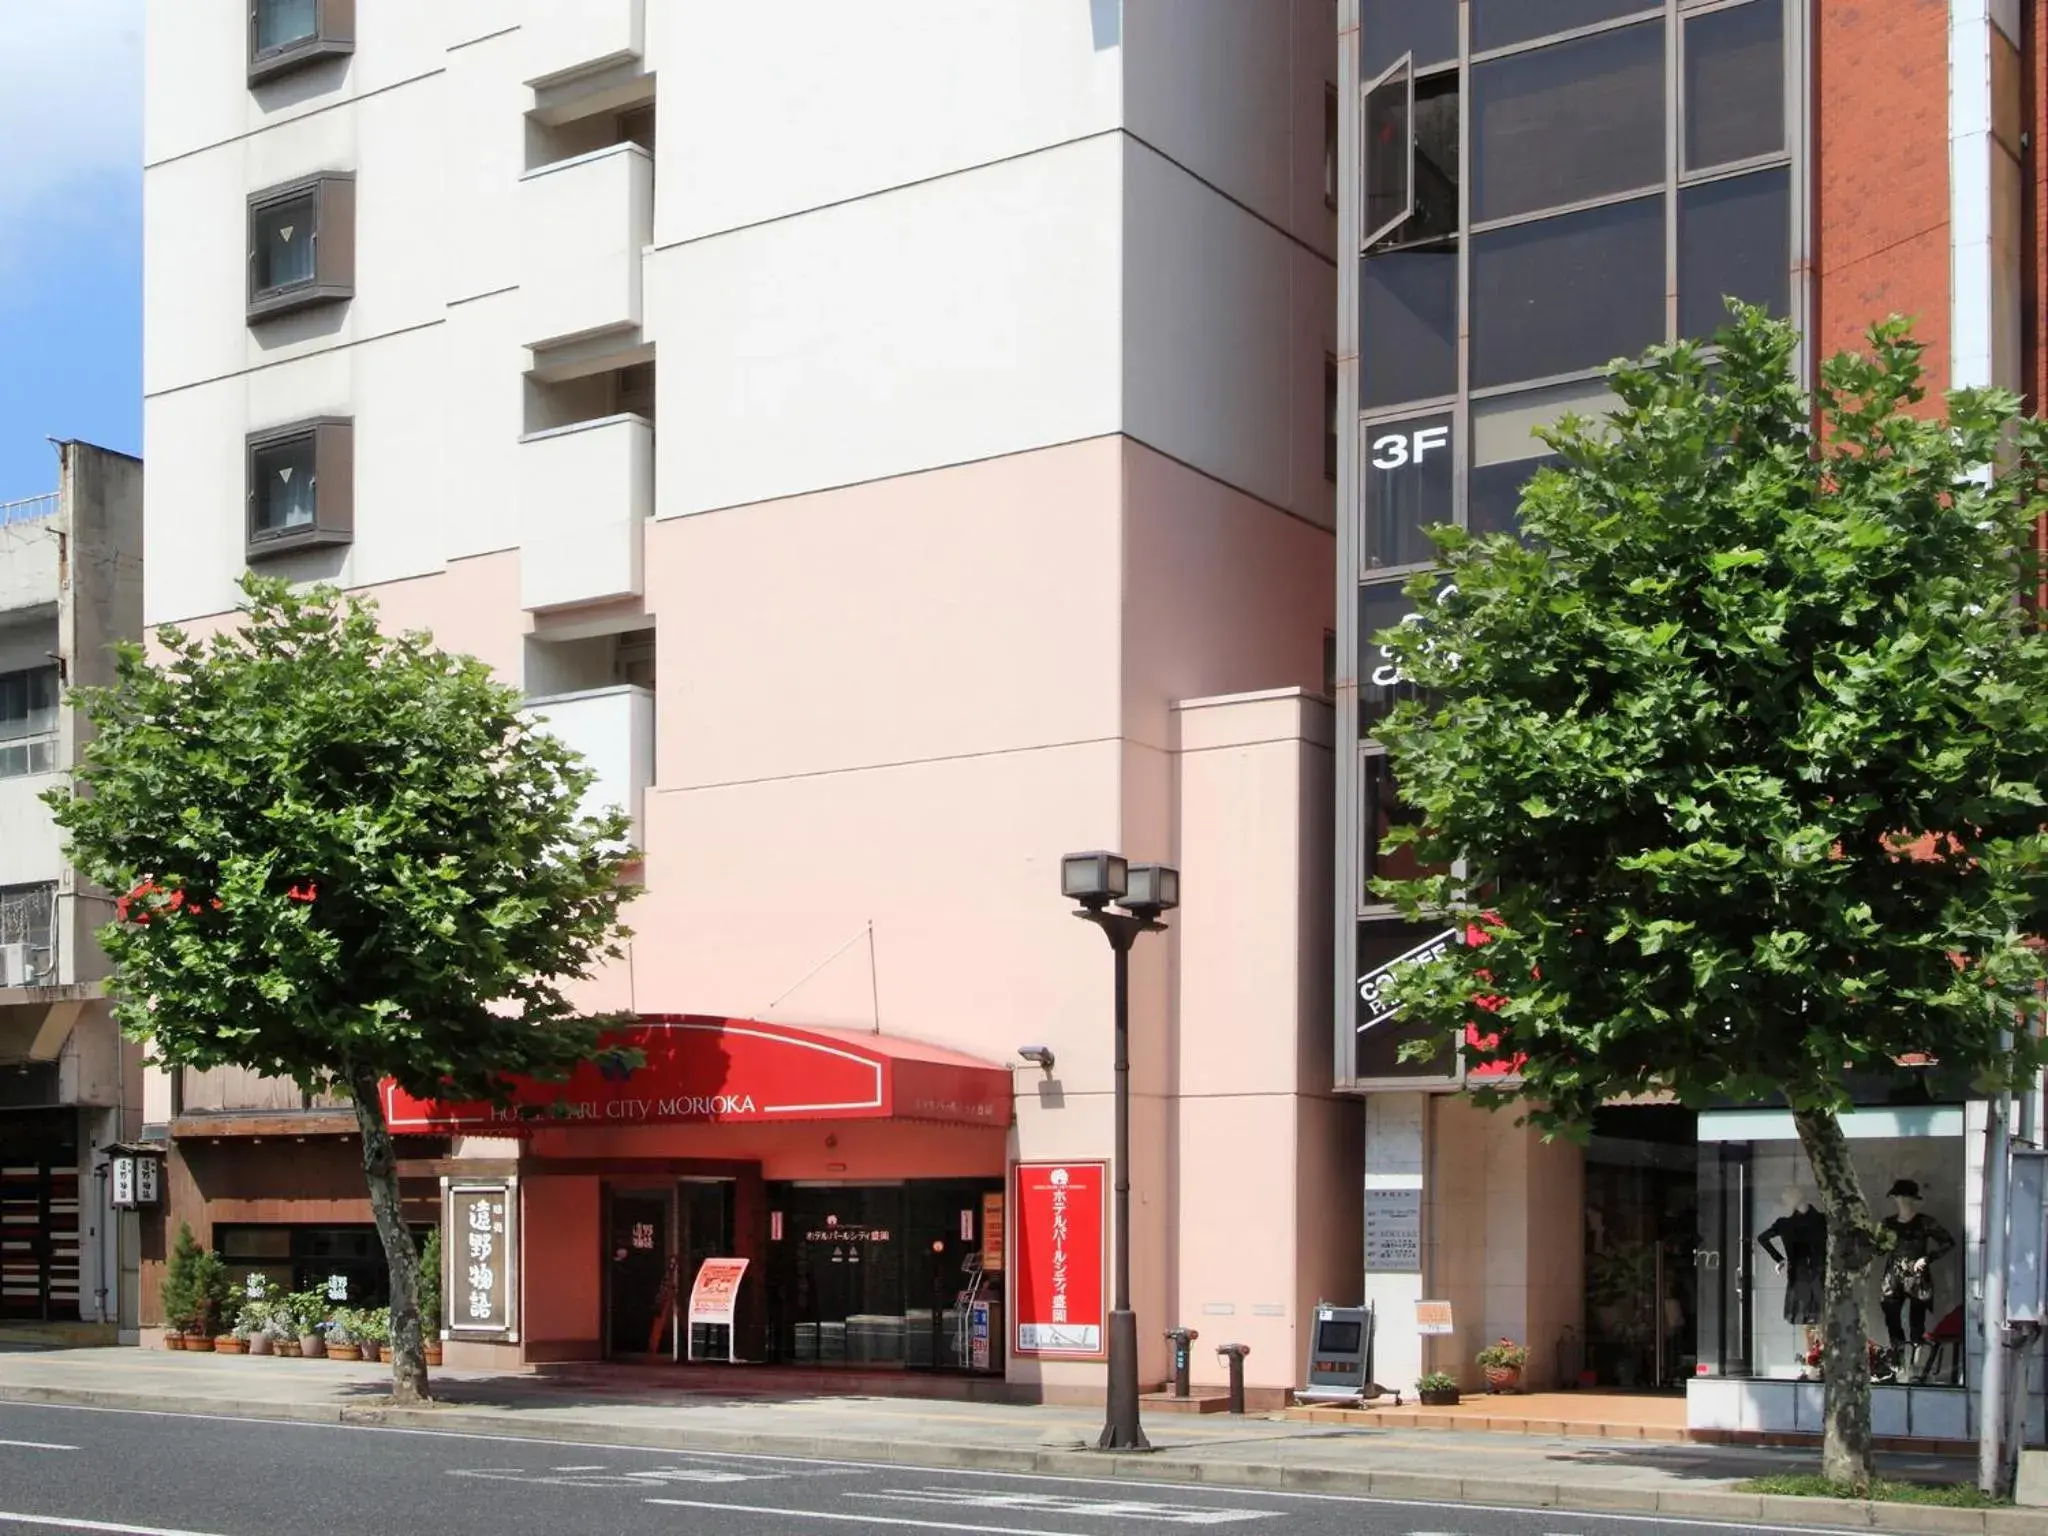 Facade/entrance, Property Building in Hotel Pearl City Morioka